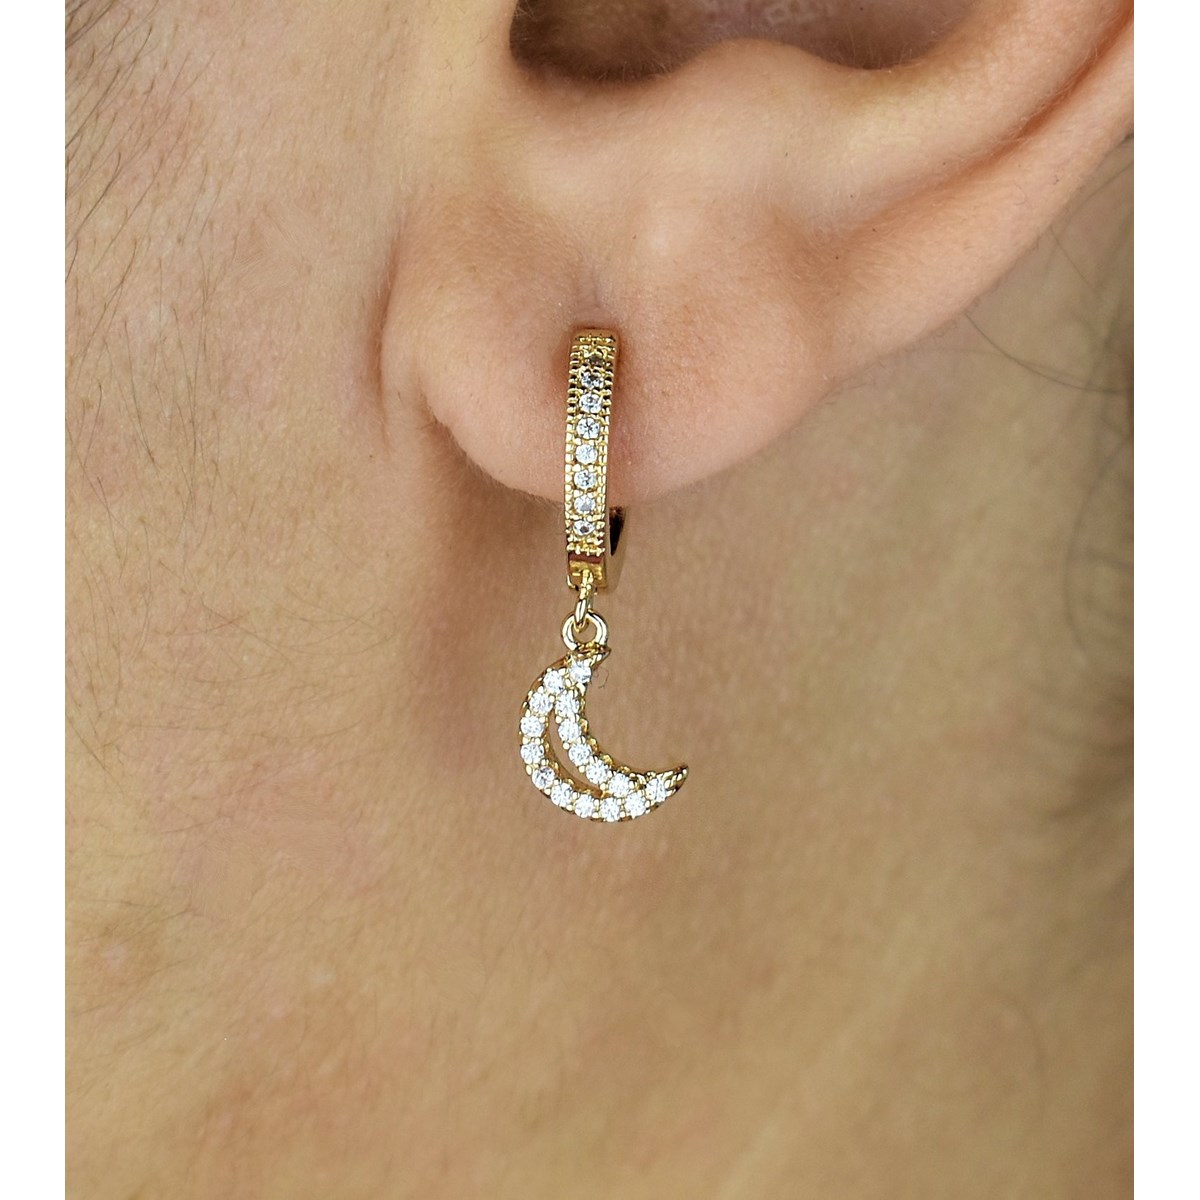 Boucles d'oreilles Mini Créoles lune oxyde de zirconium pendante Plaqué or 750 3 microns - vue 2